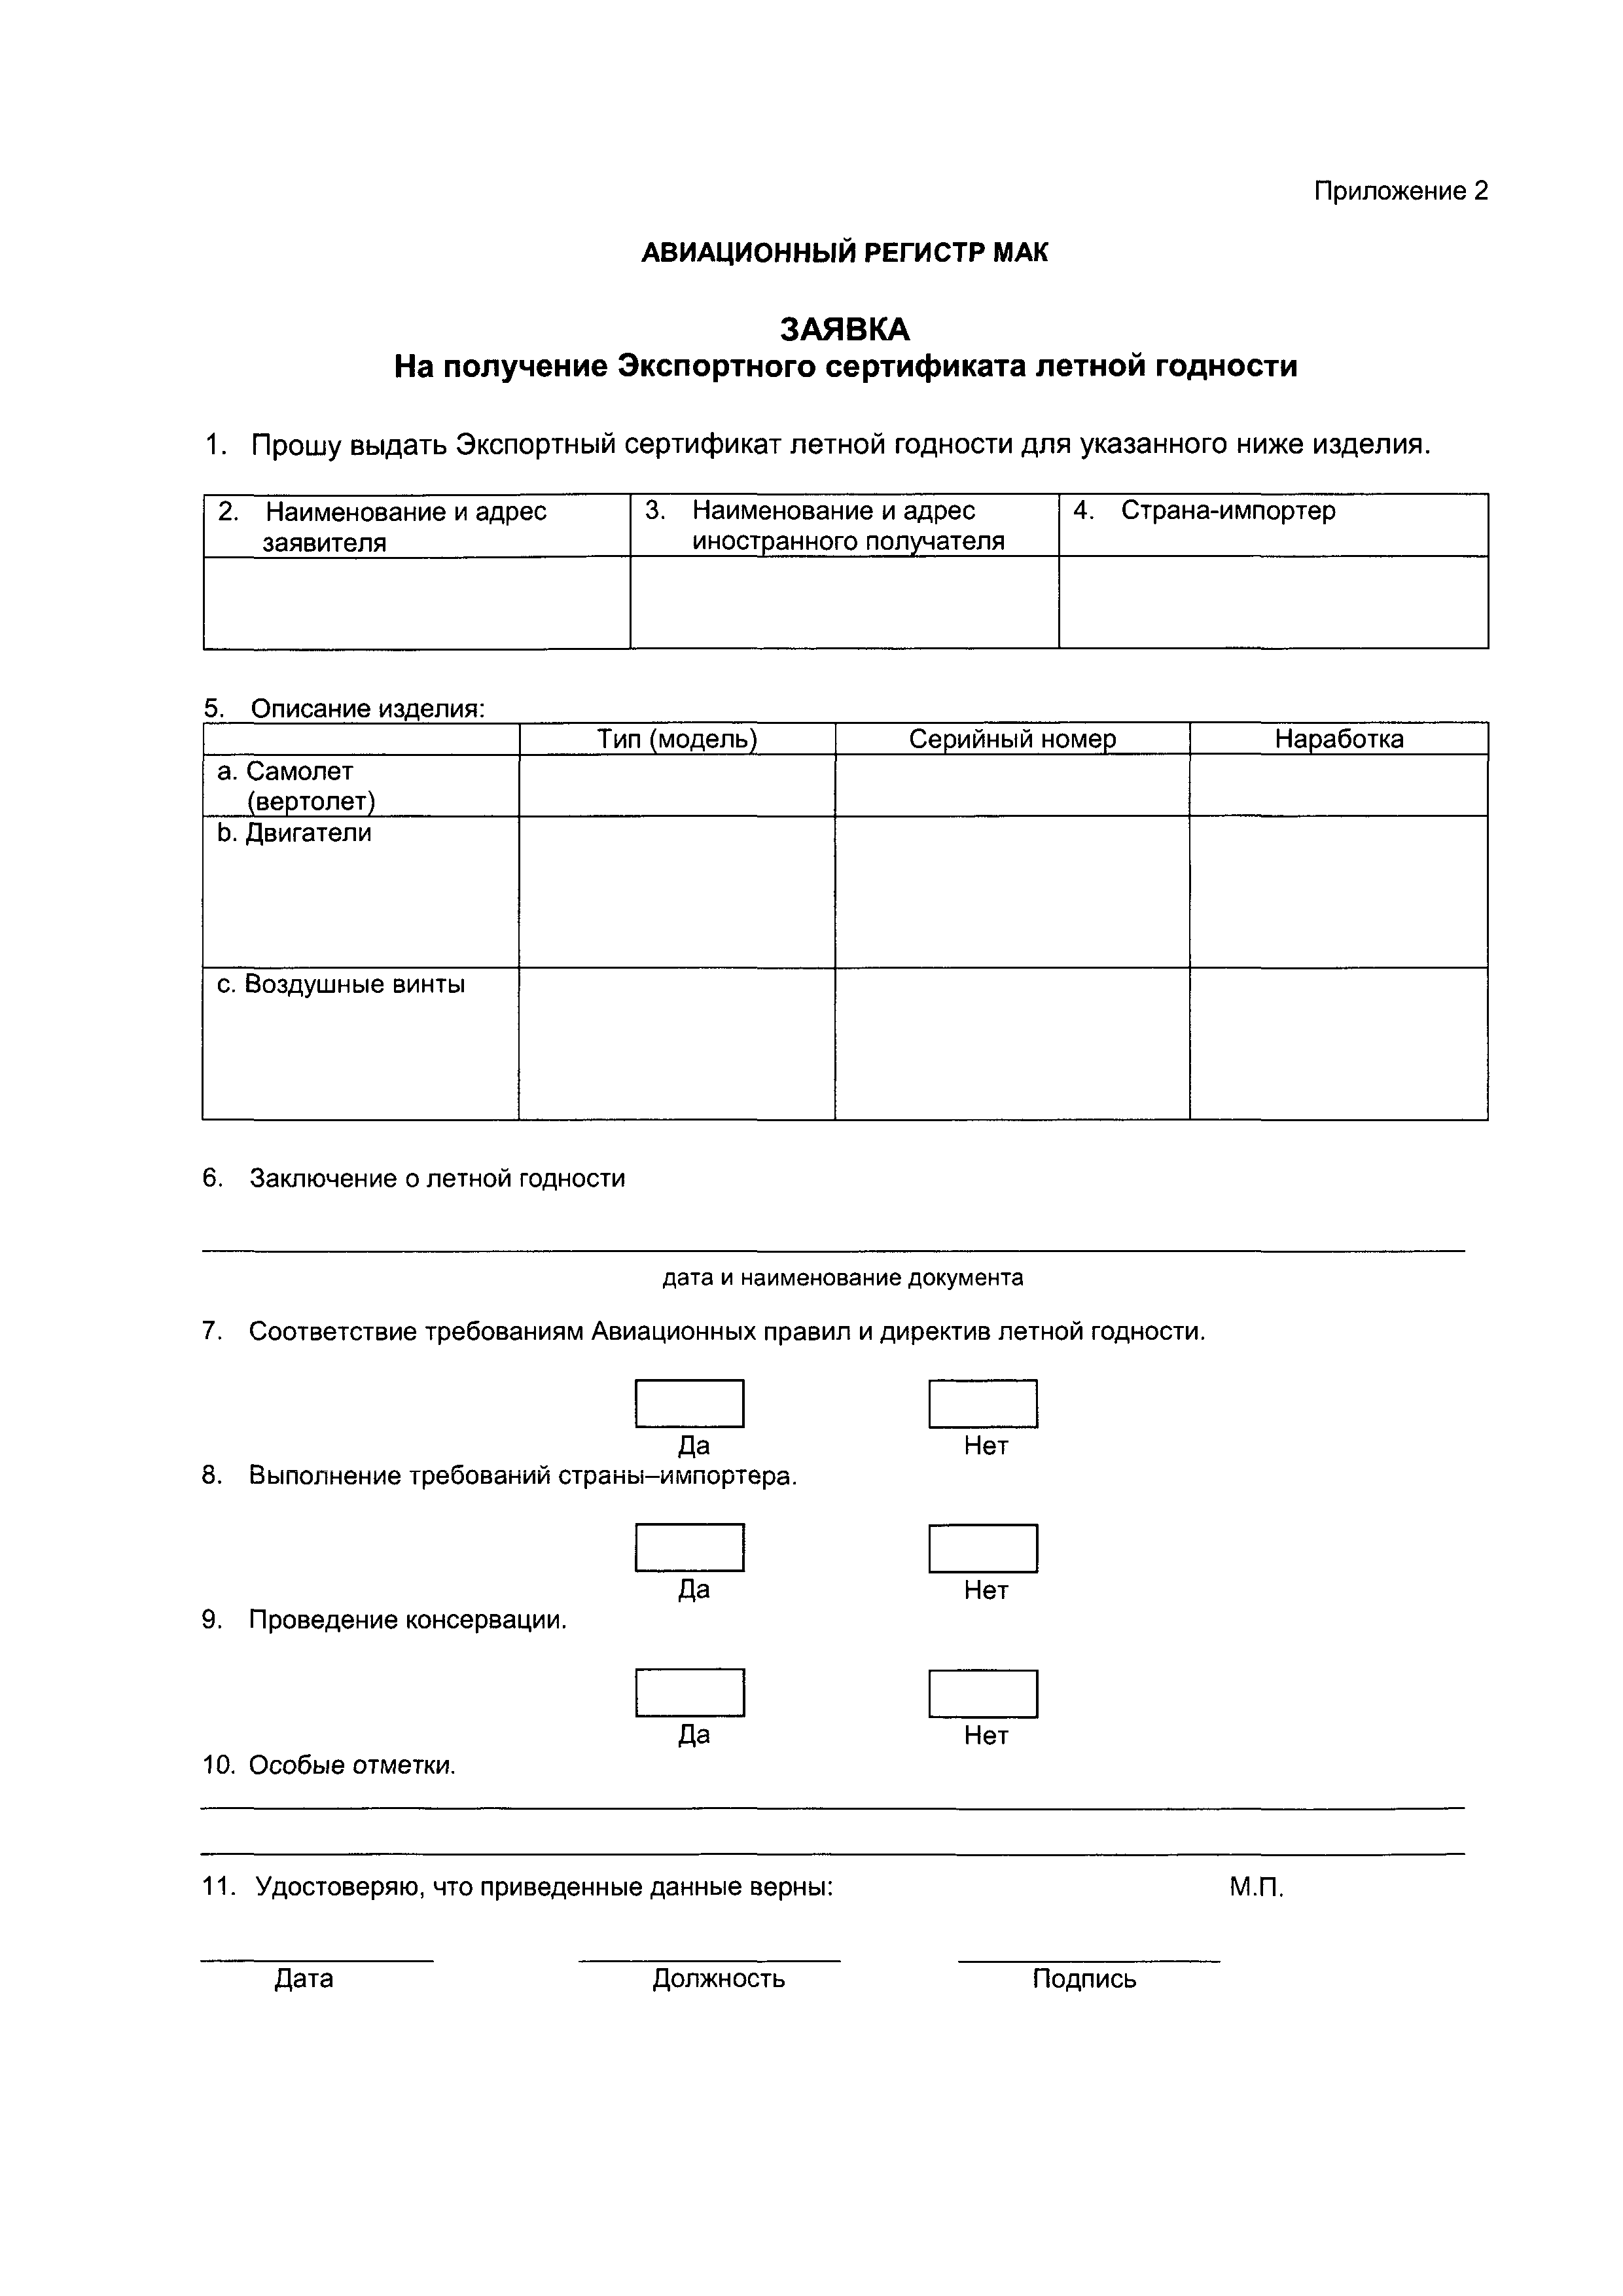 Директивное письмо 6-95/2001